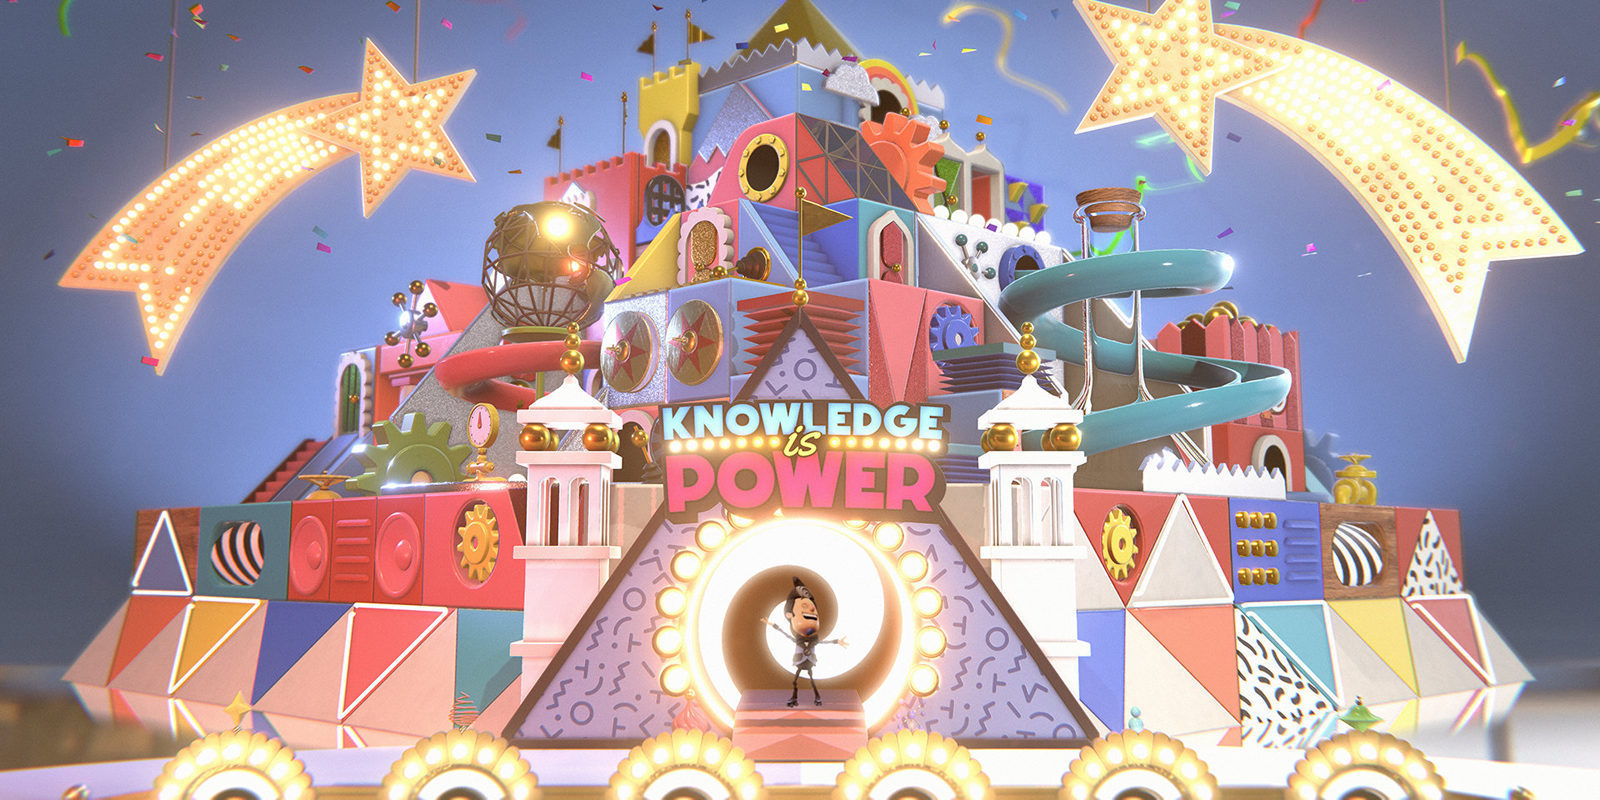 Análisis de 'Saber es Poder' PlayLink para PS4, donde no se premia siempre el conocimiento